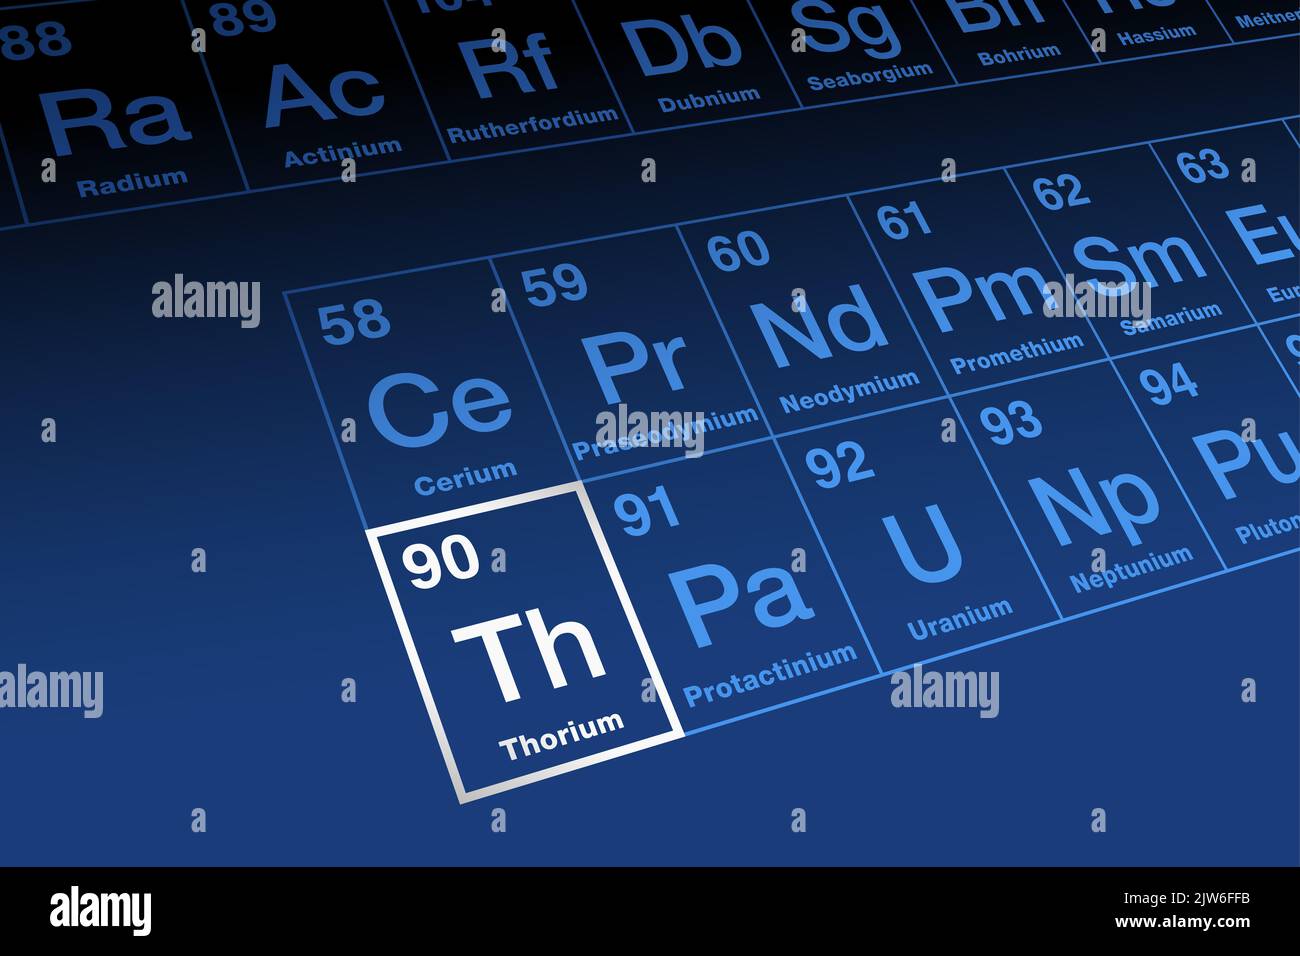 Thorium, sur la table périodique des éléments, dans la série des actinides. Élément métallique radioactif avec numéro atomique 90 et symbole TH. Banque D'Images